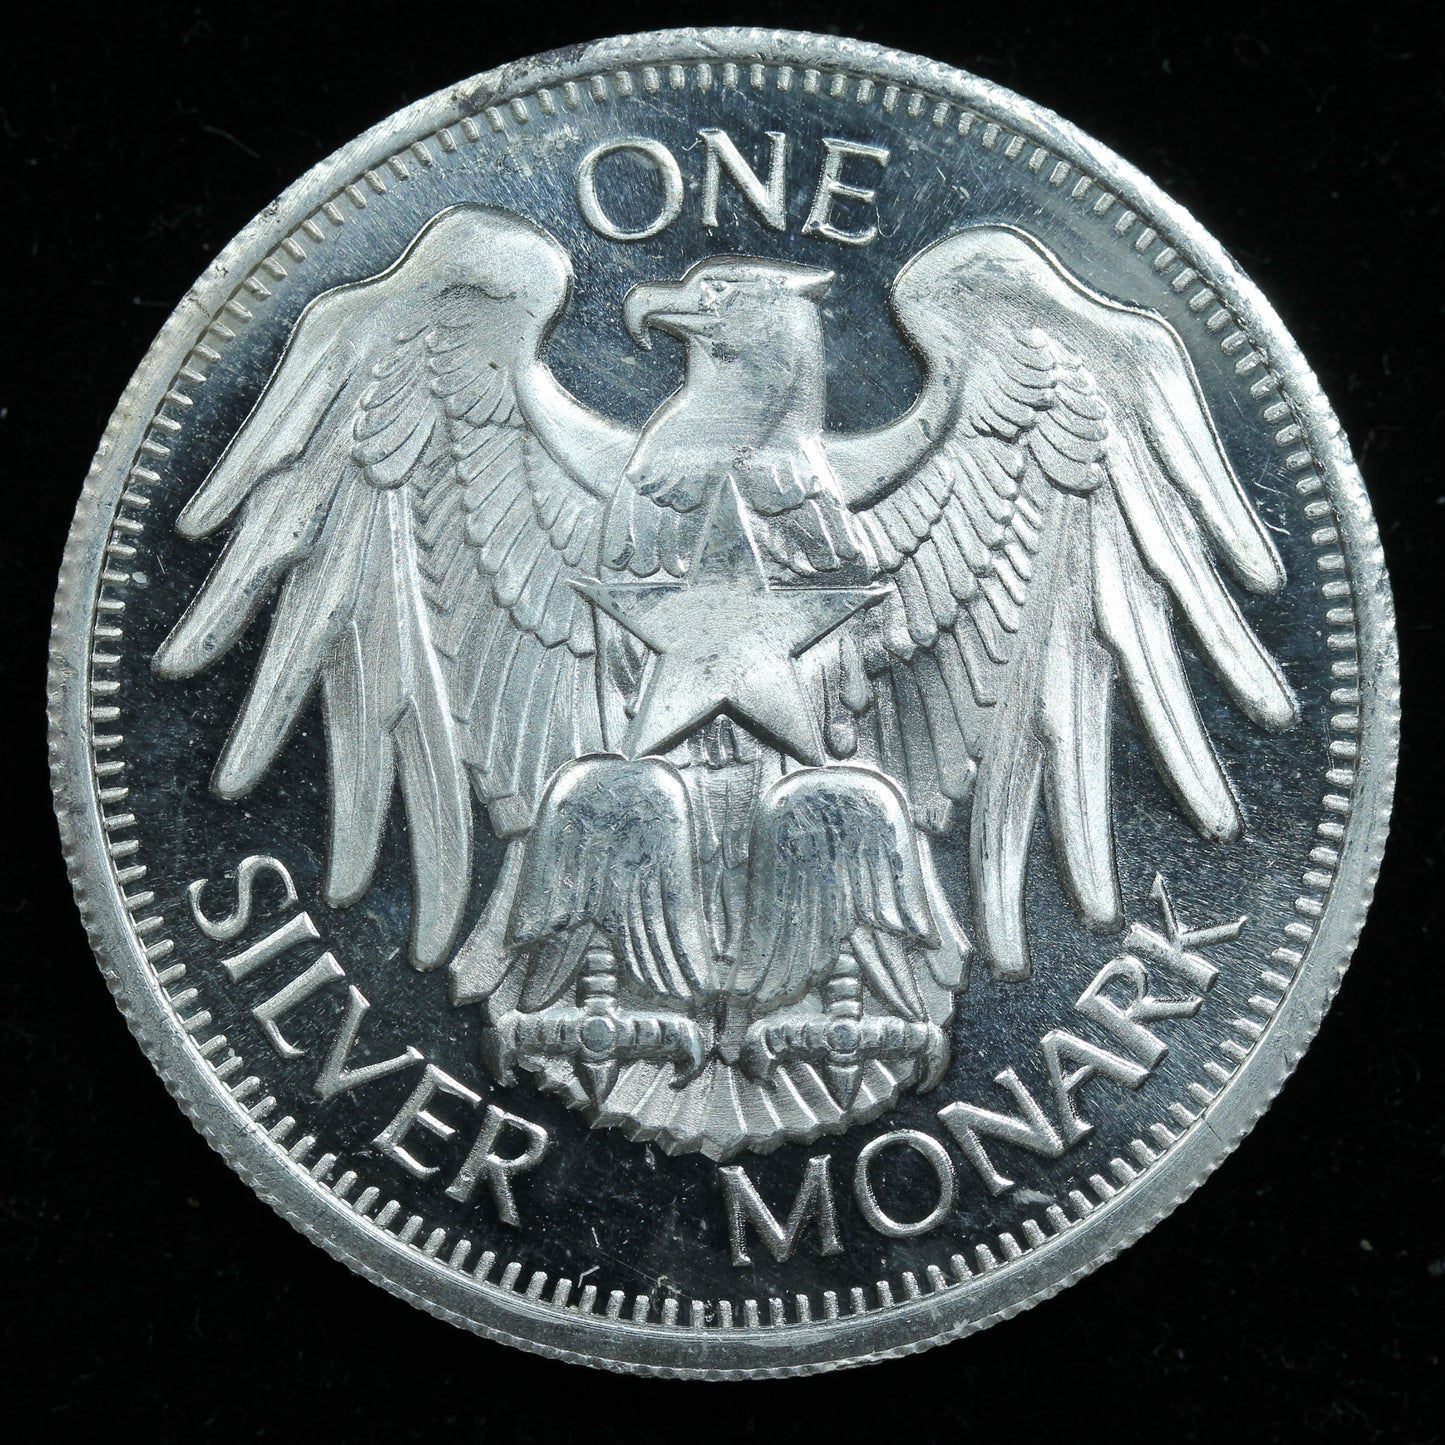 1 oz .999 Fine Silver Round - One Silver Monark w/ Capsule